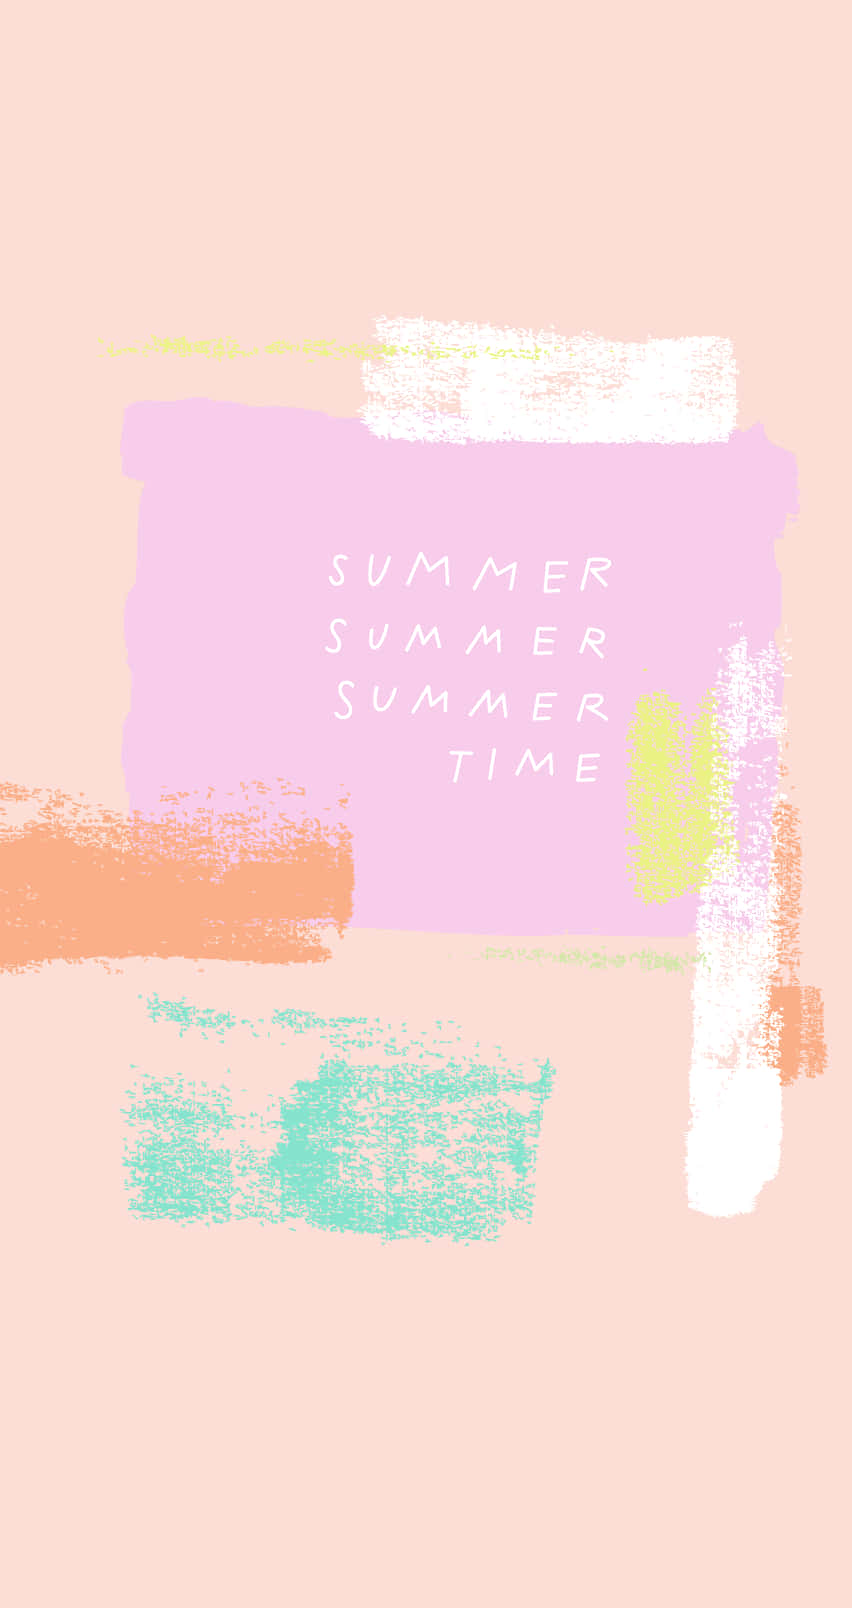 Nyd et sjovt fyldt sommerweekend med din iPhone. Wallpaper